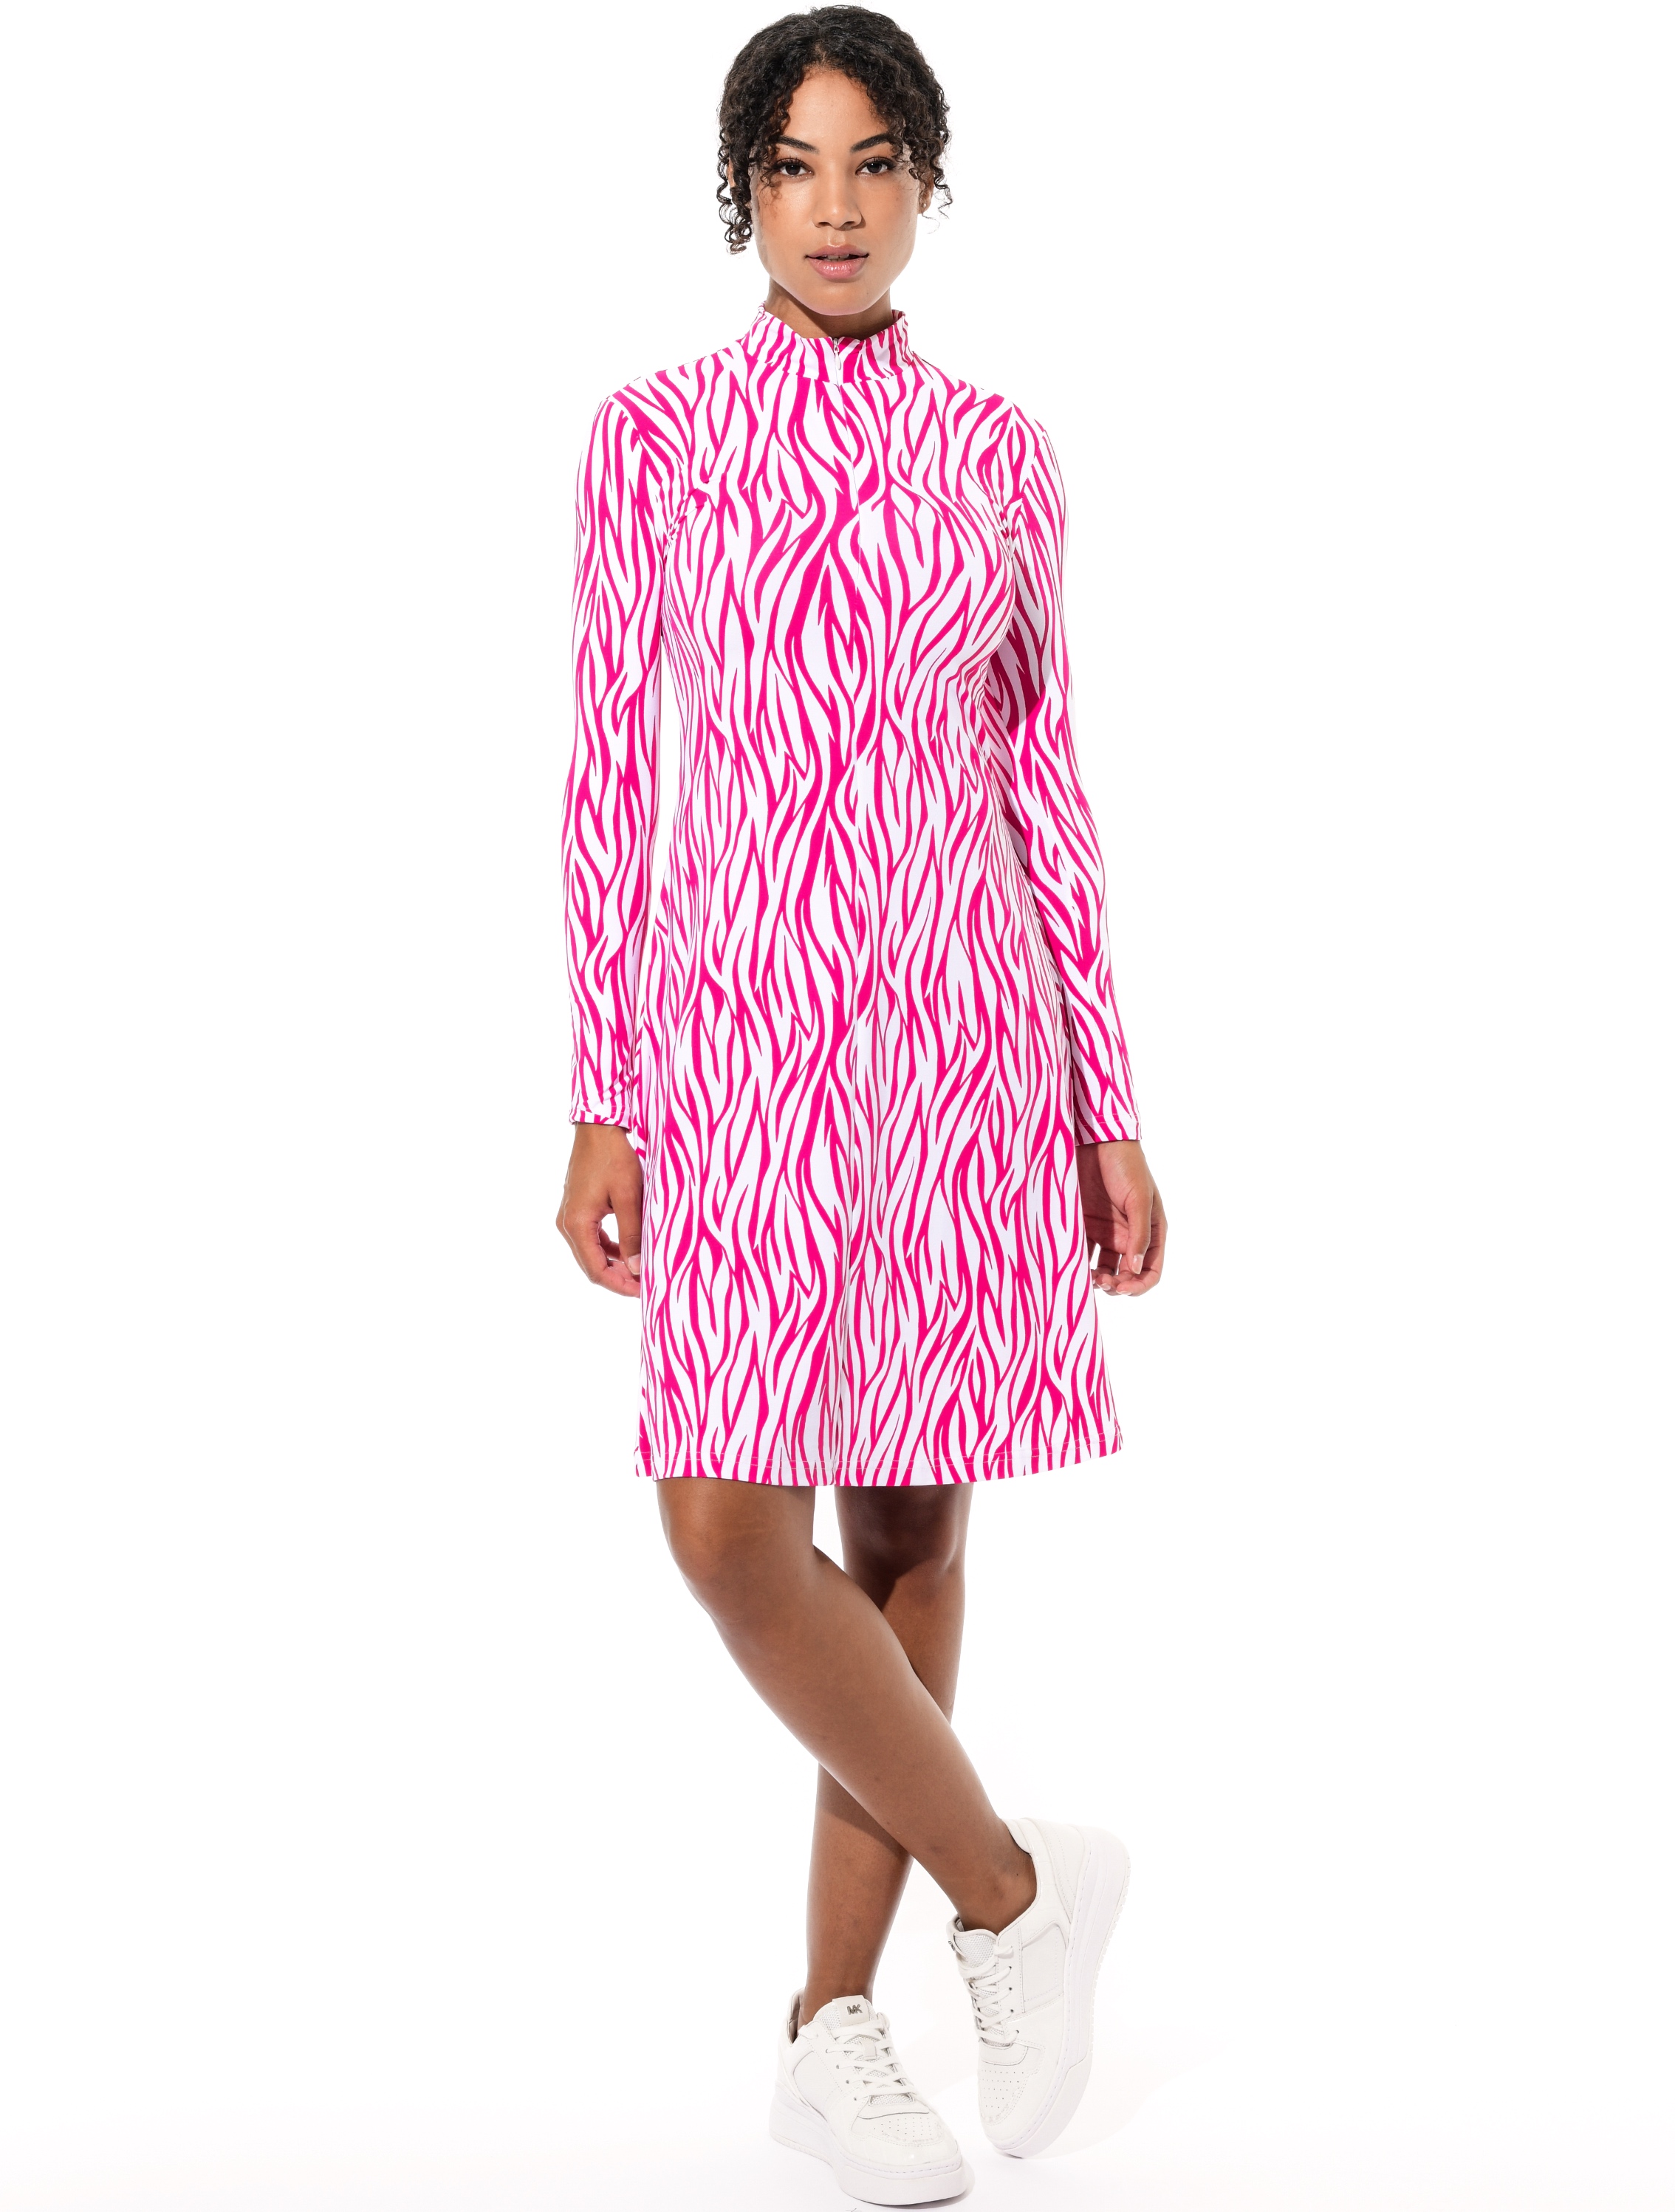 Zebra Skin Print Kleid flamingo